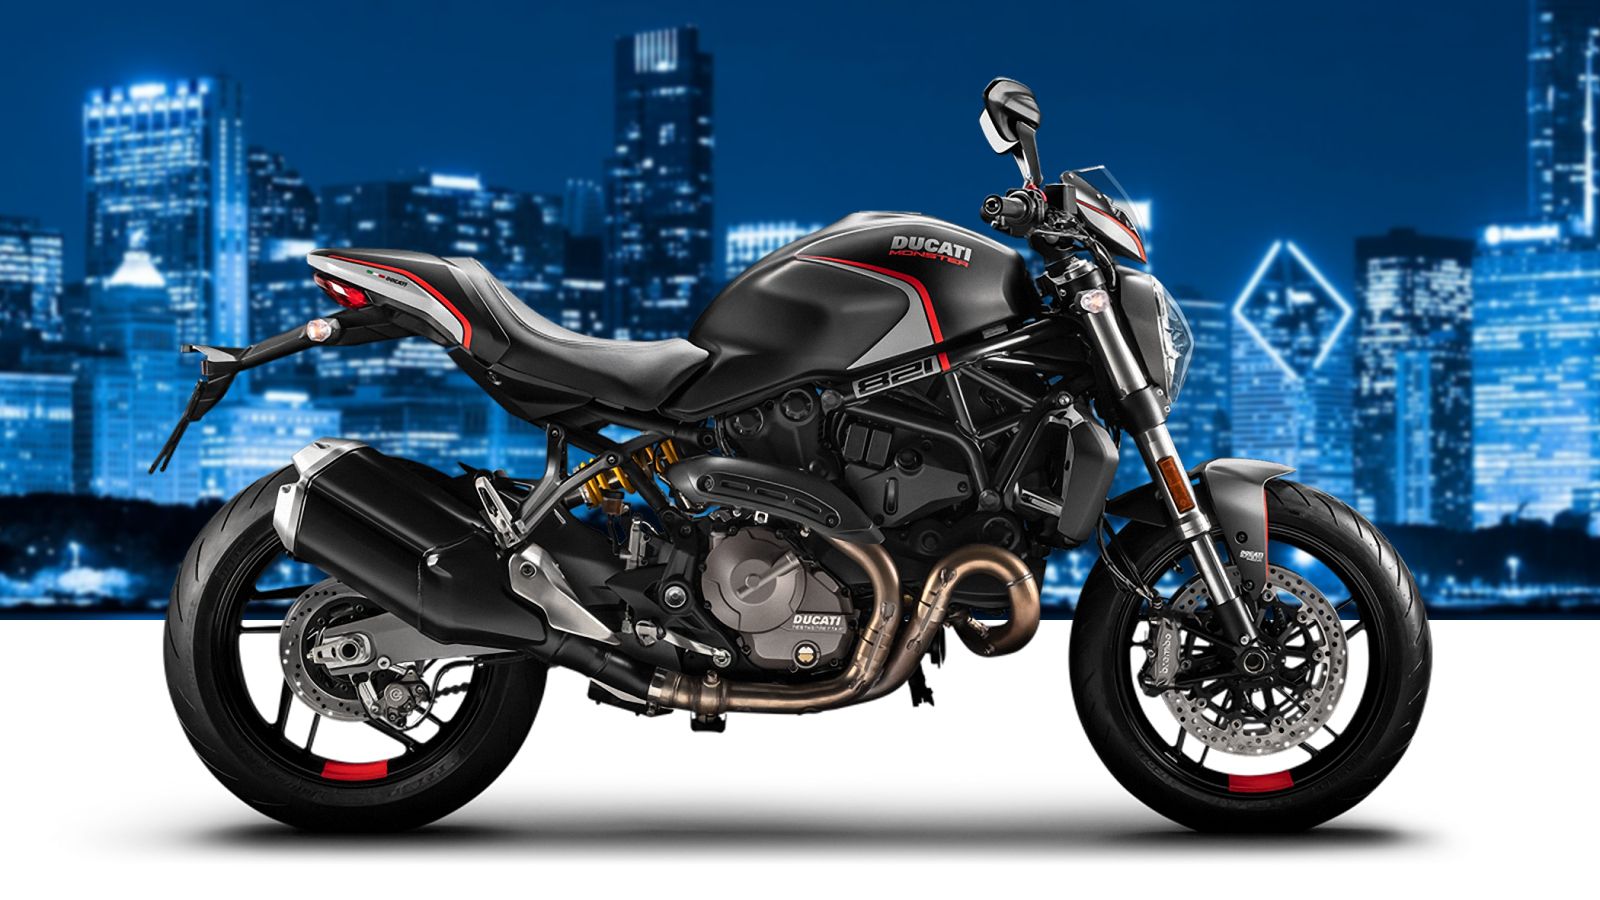 2019 - 2020 Ducati Monster 821 Stealth